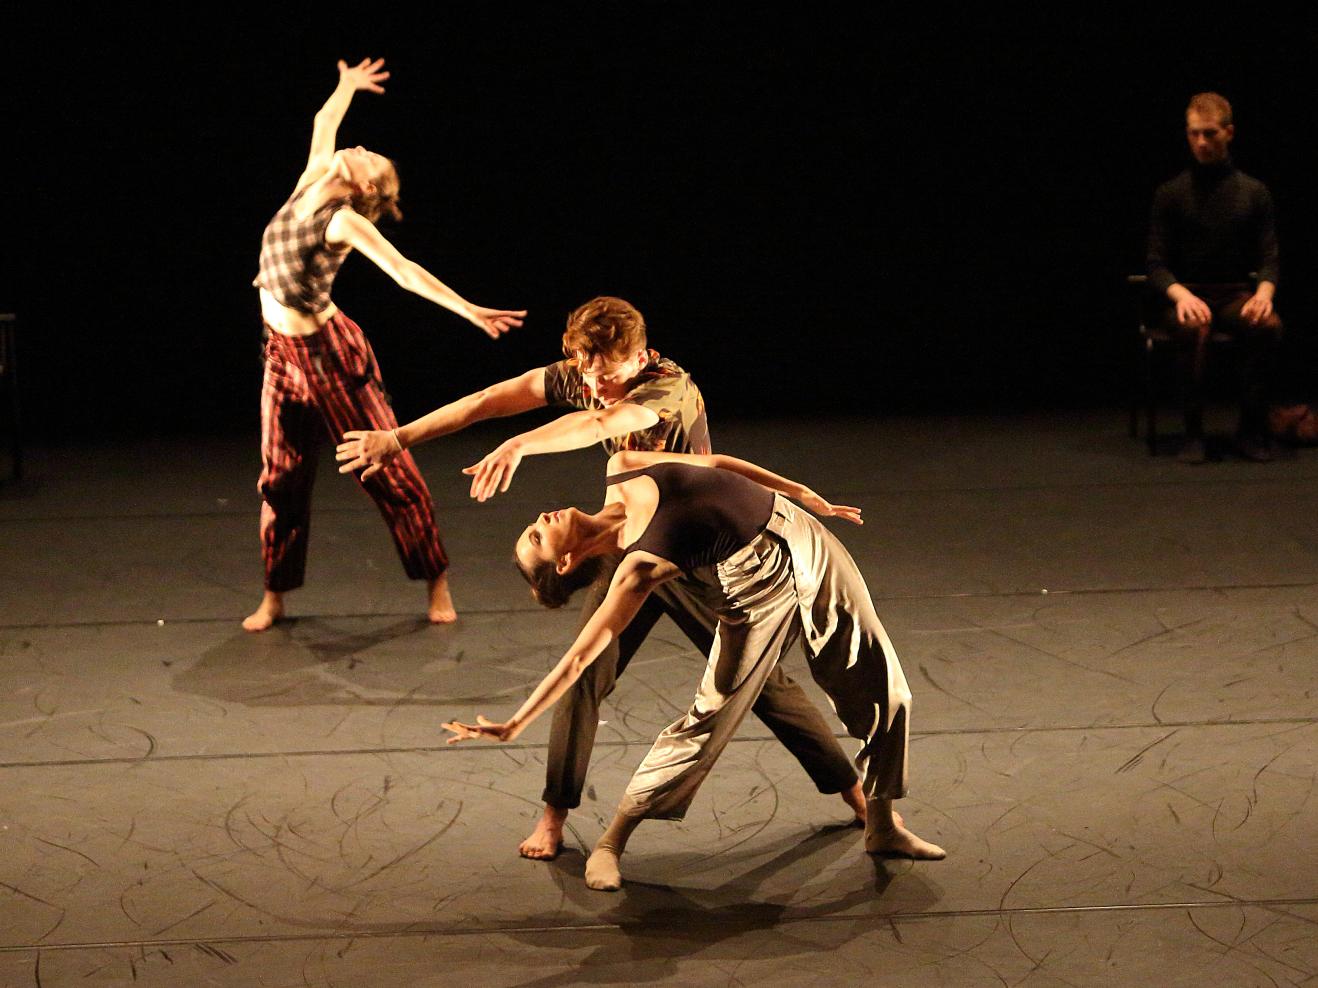 Drei Tanzenden bewegen sich auf der Bühne im Scheinwerferlicht